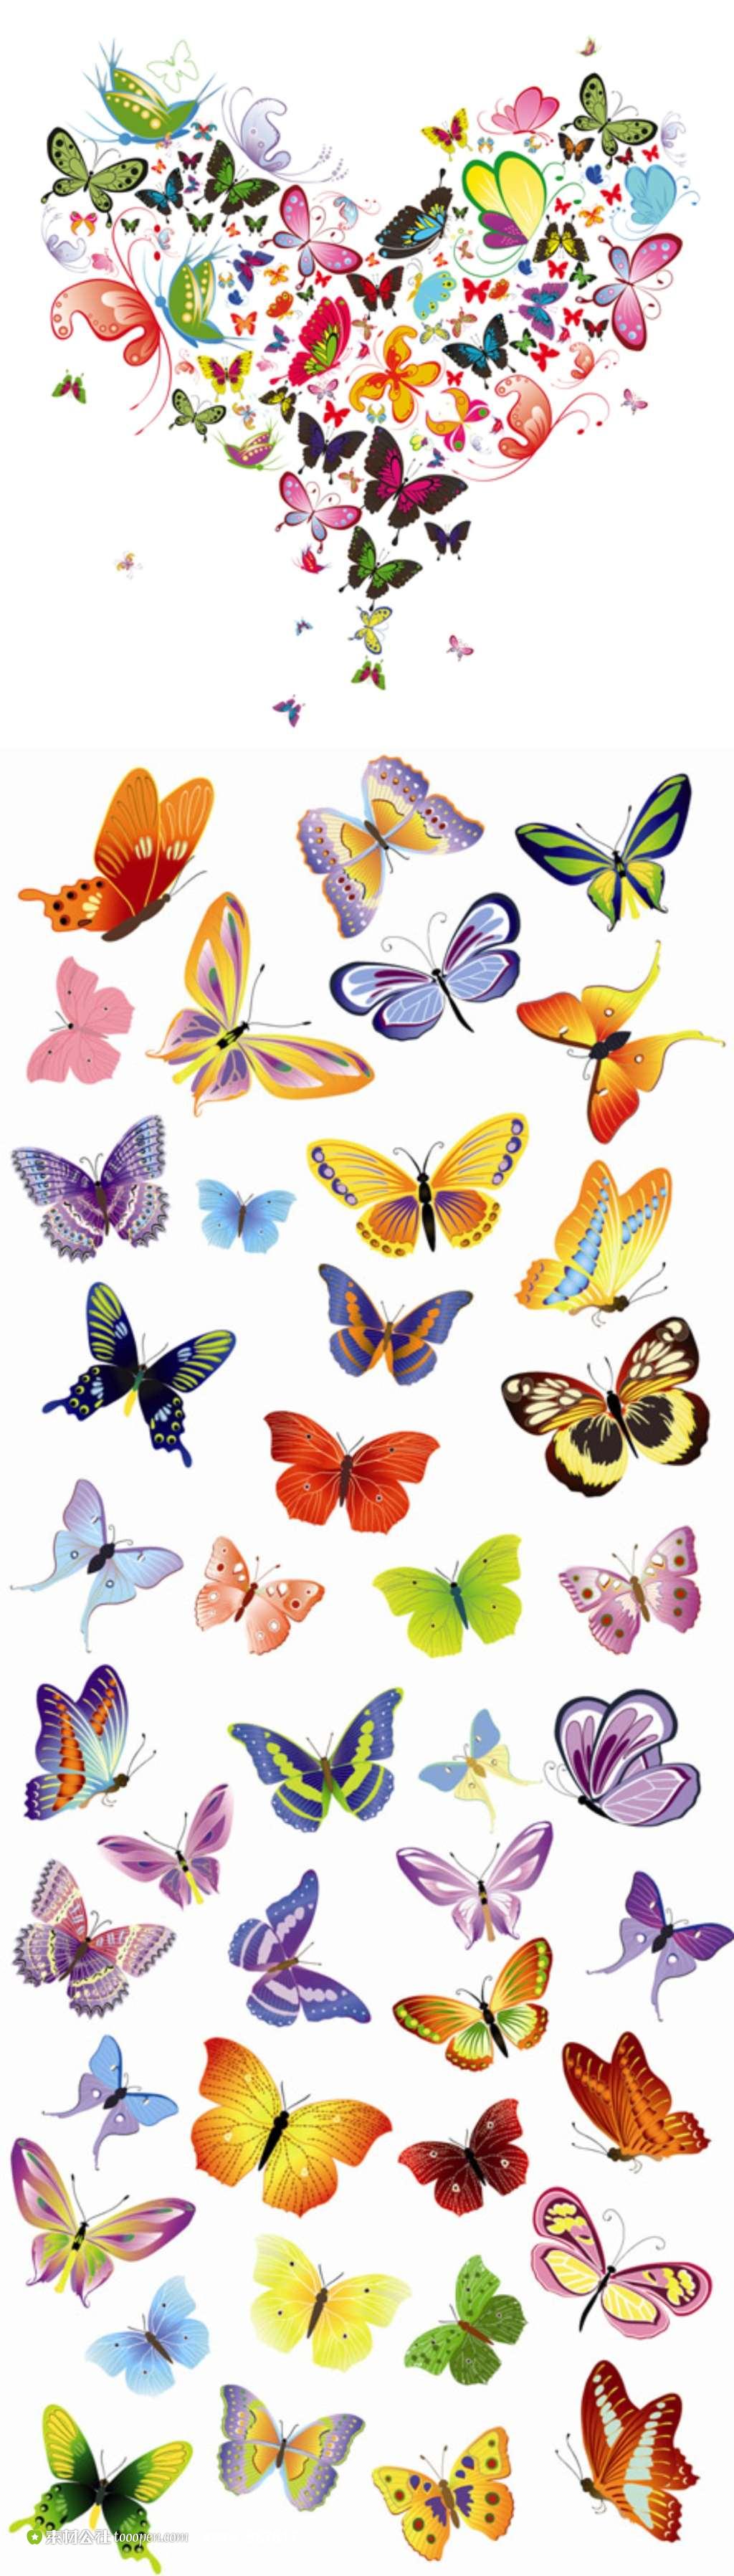 精美的手绘蝴蝶图案矢量插画